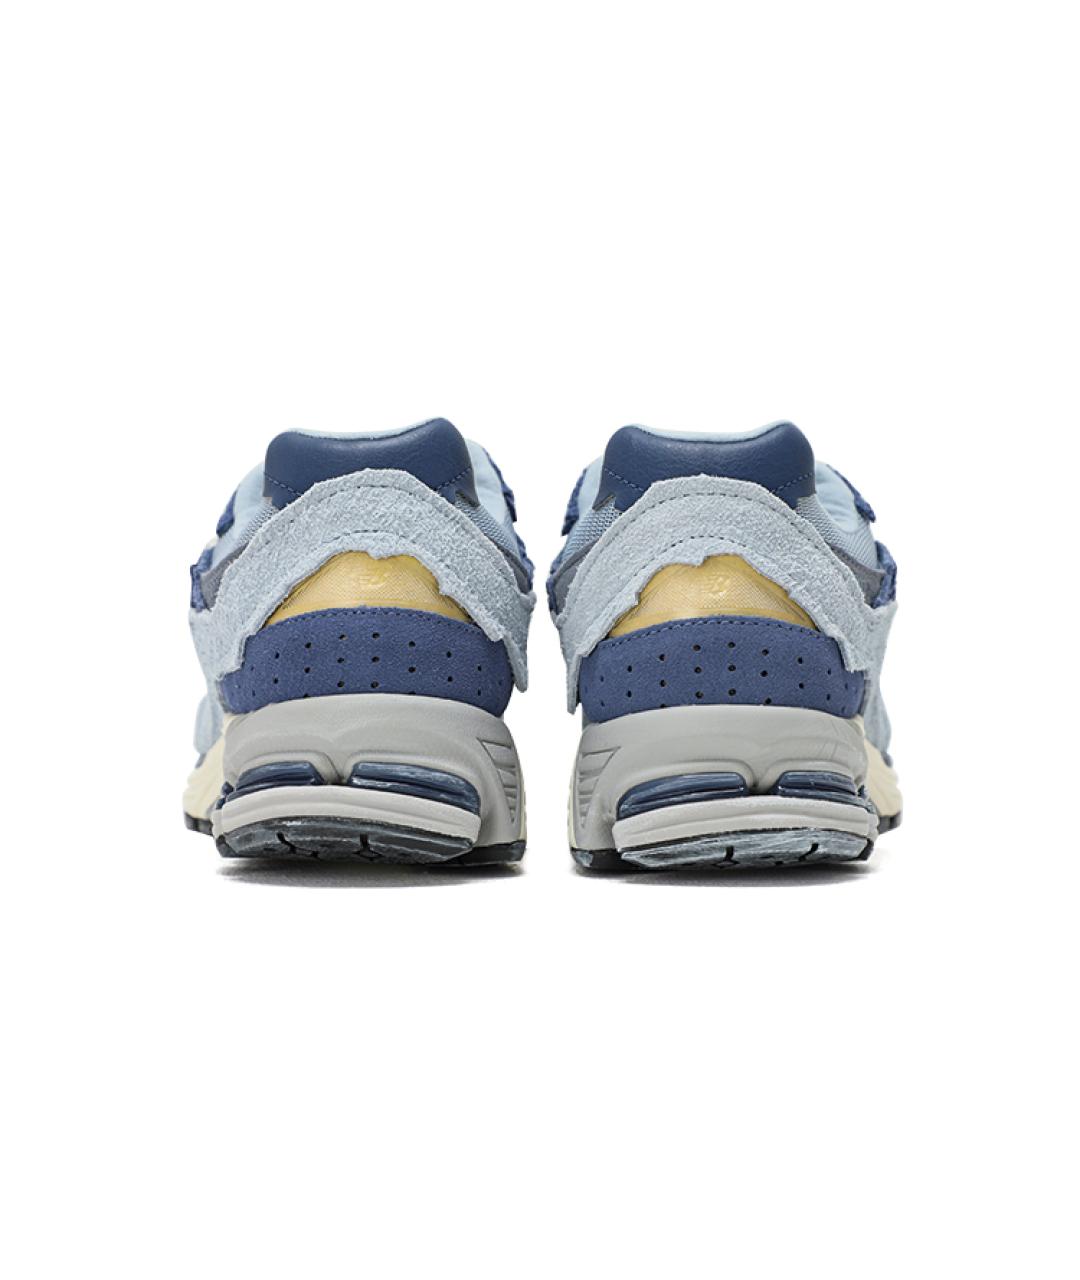 NEW BALANCE Синие замшевые низкие кроссовки / кеды, фото 4